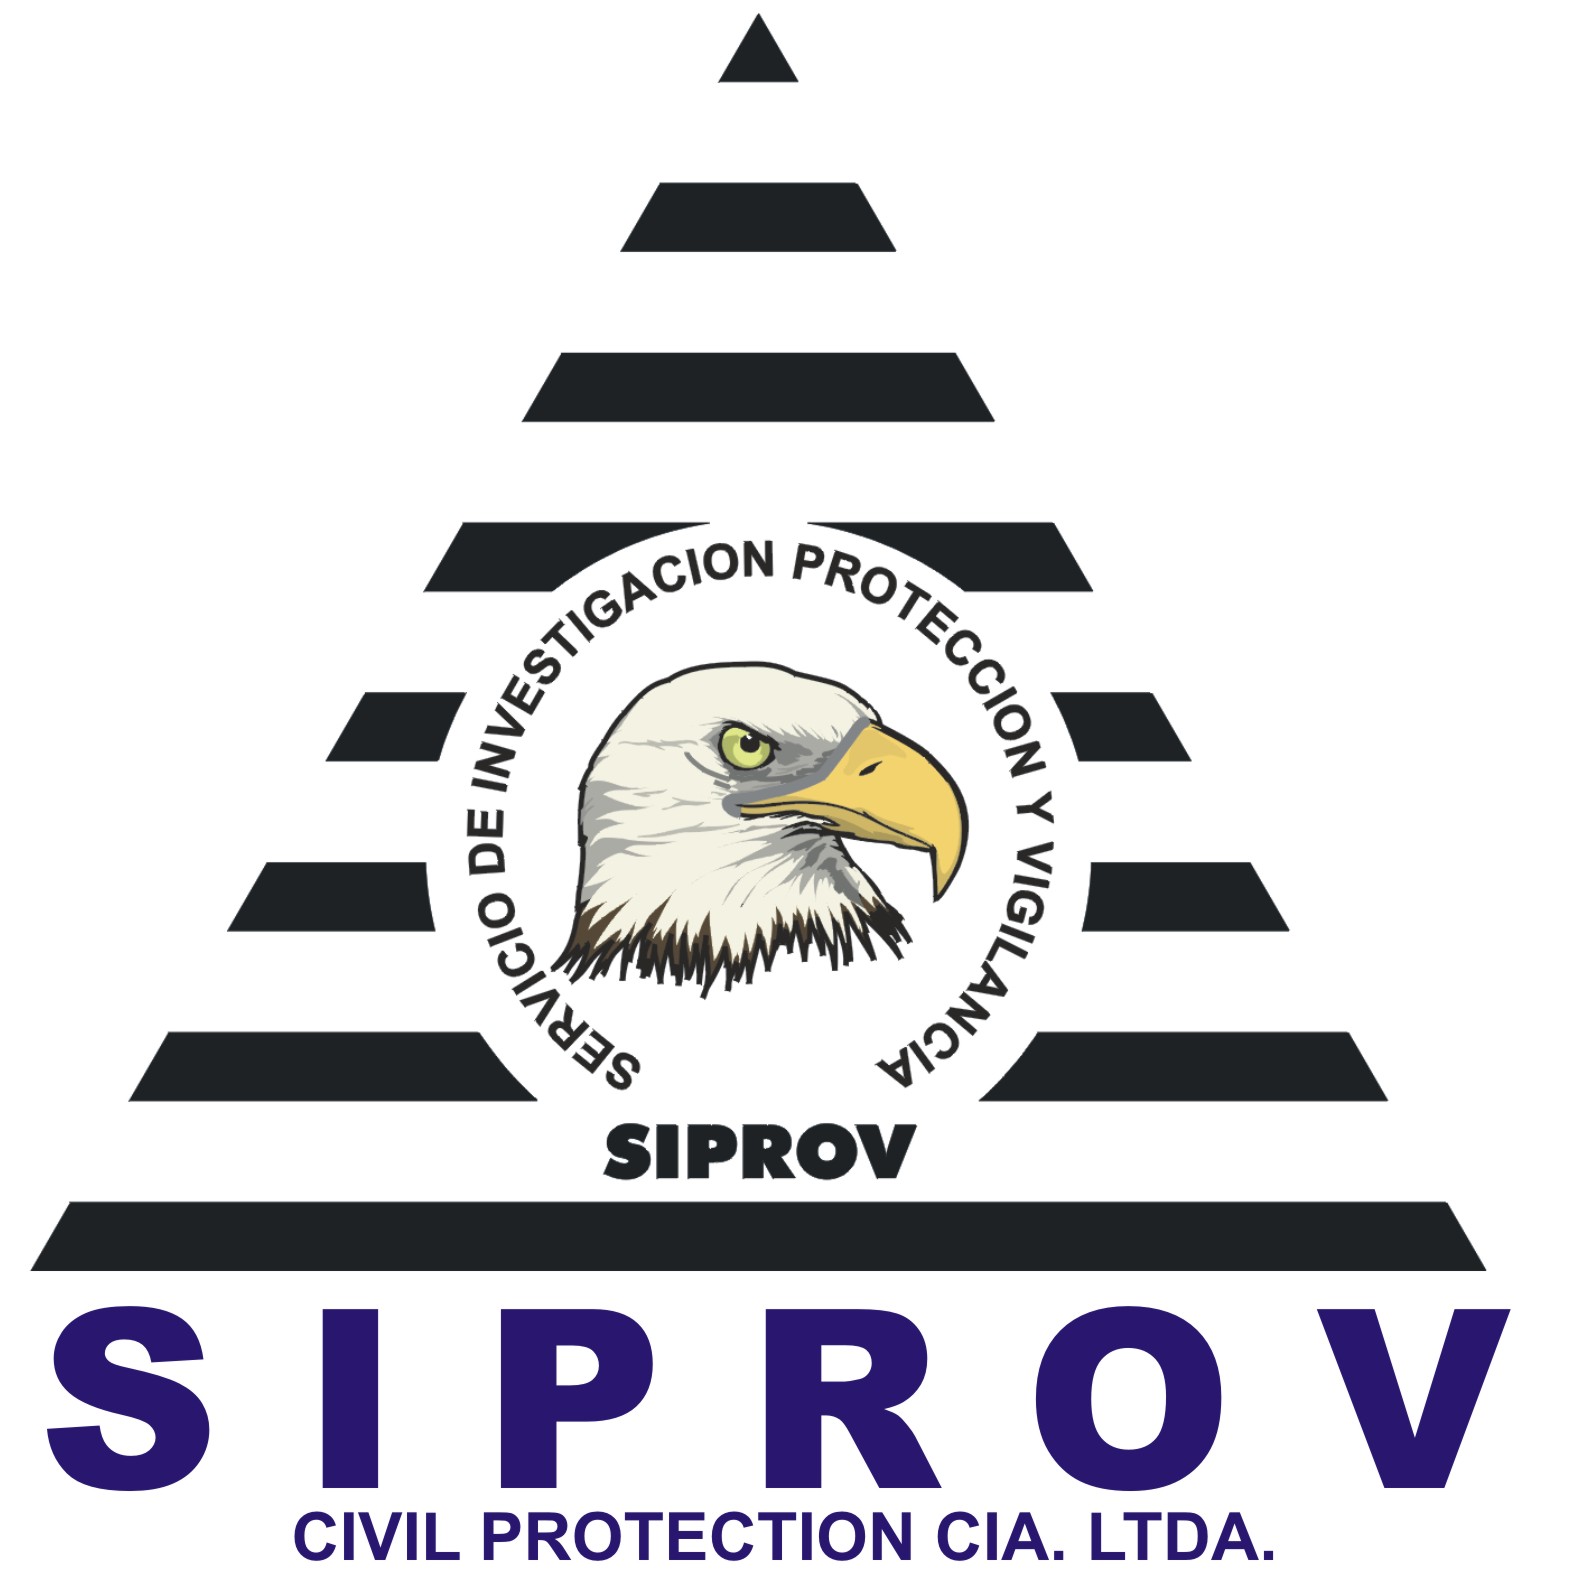 Siprov - Civil Protection Cia. Ltda.